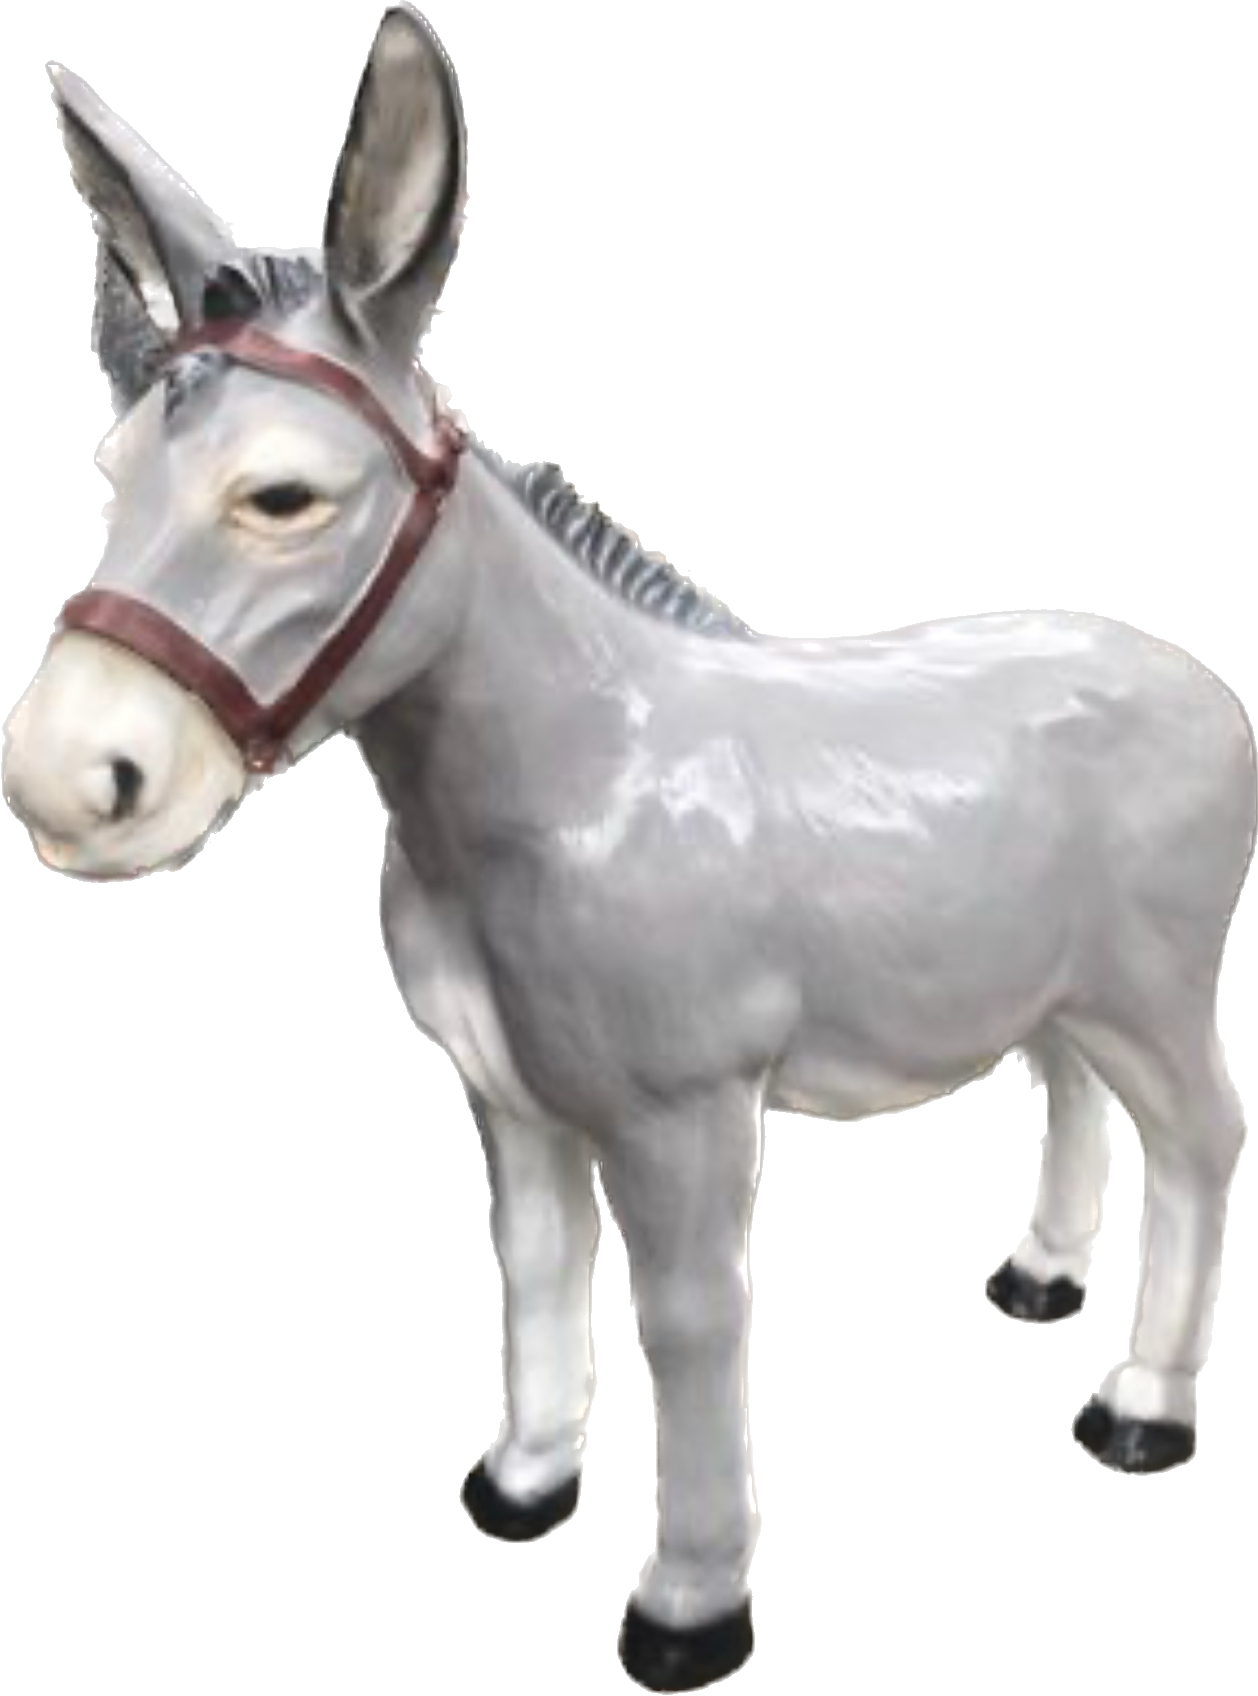 Donkey sculpture